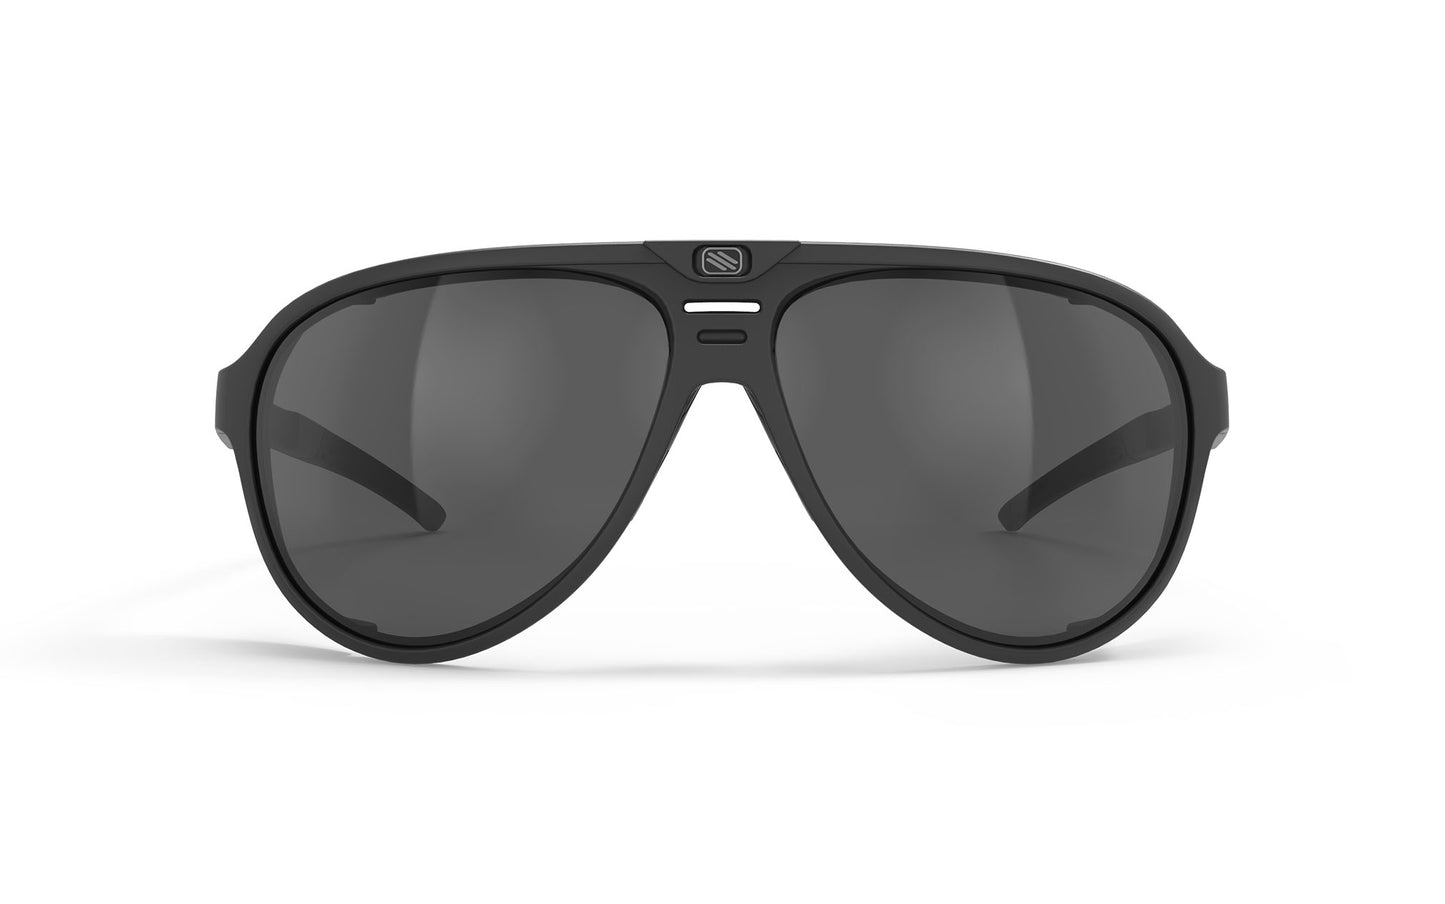 Stardash Eyewear in Black Matte - Smoke Black Lens